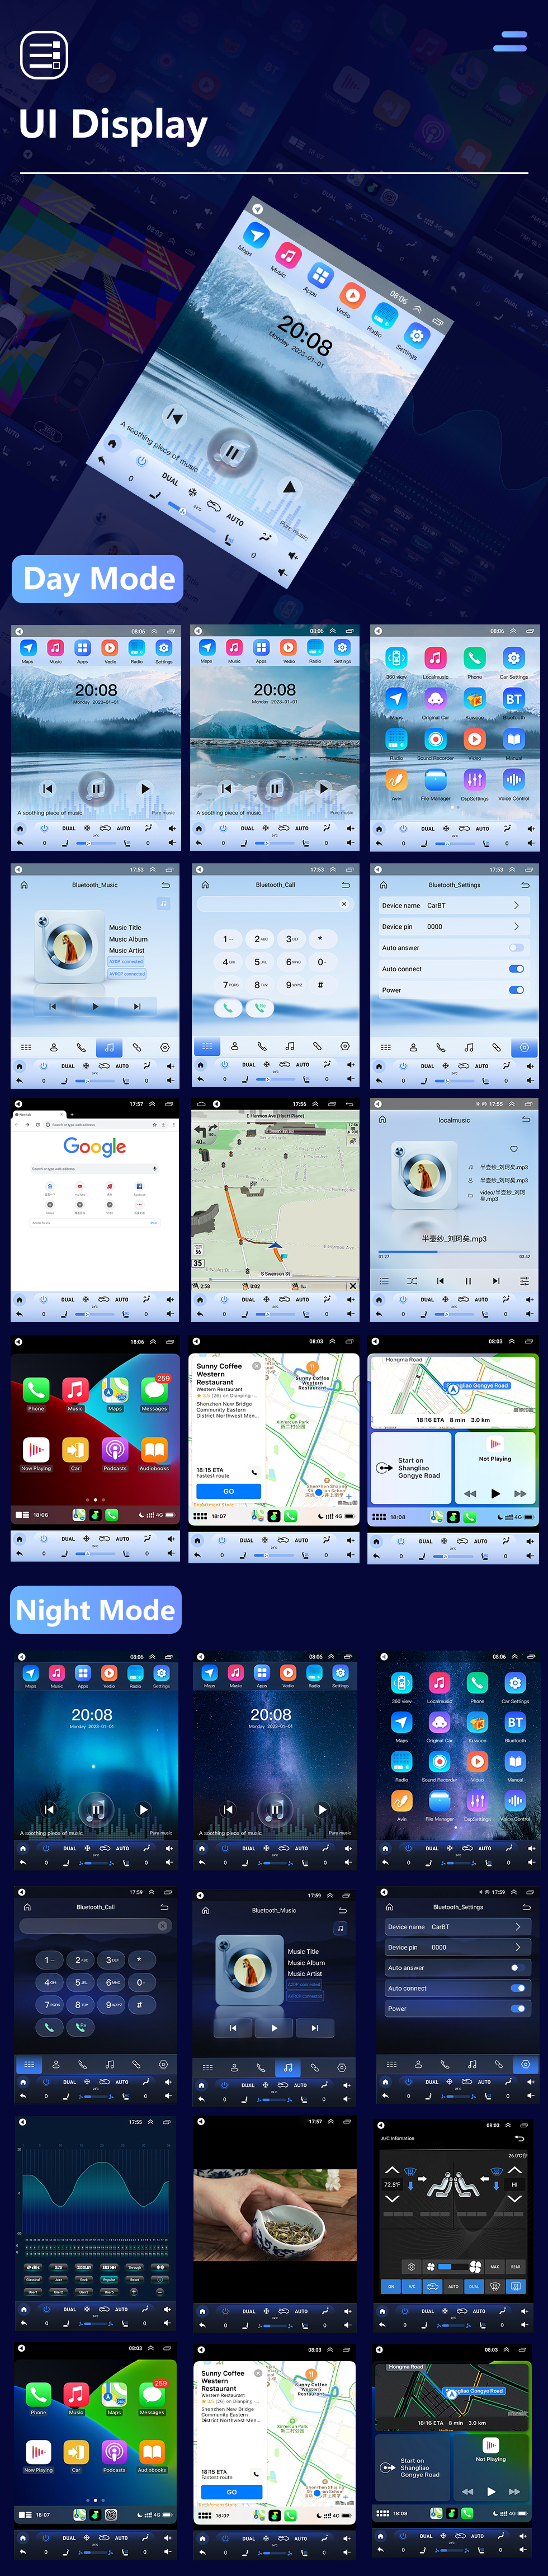 Seicane 2015 Kia Soul 9,7 Zoll Touchscreen Android 10.0 Multimedia-Player Bluetooth GPS-Navigationssystem Wifi FM USB-Unterstützung DVR Lenkradsteuerung DVD-Player